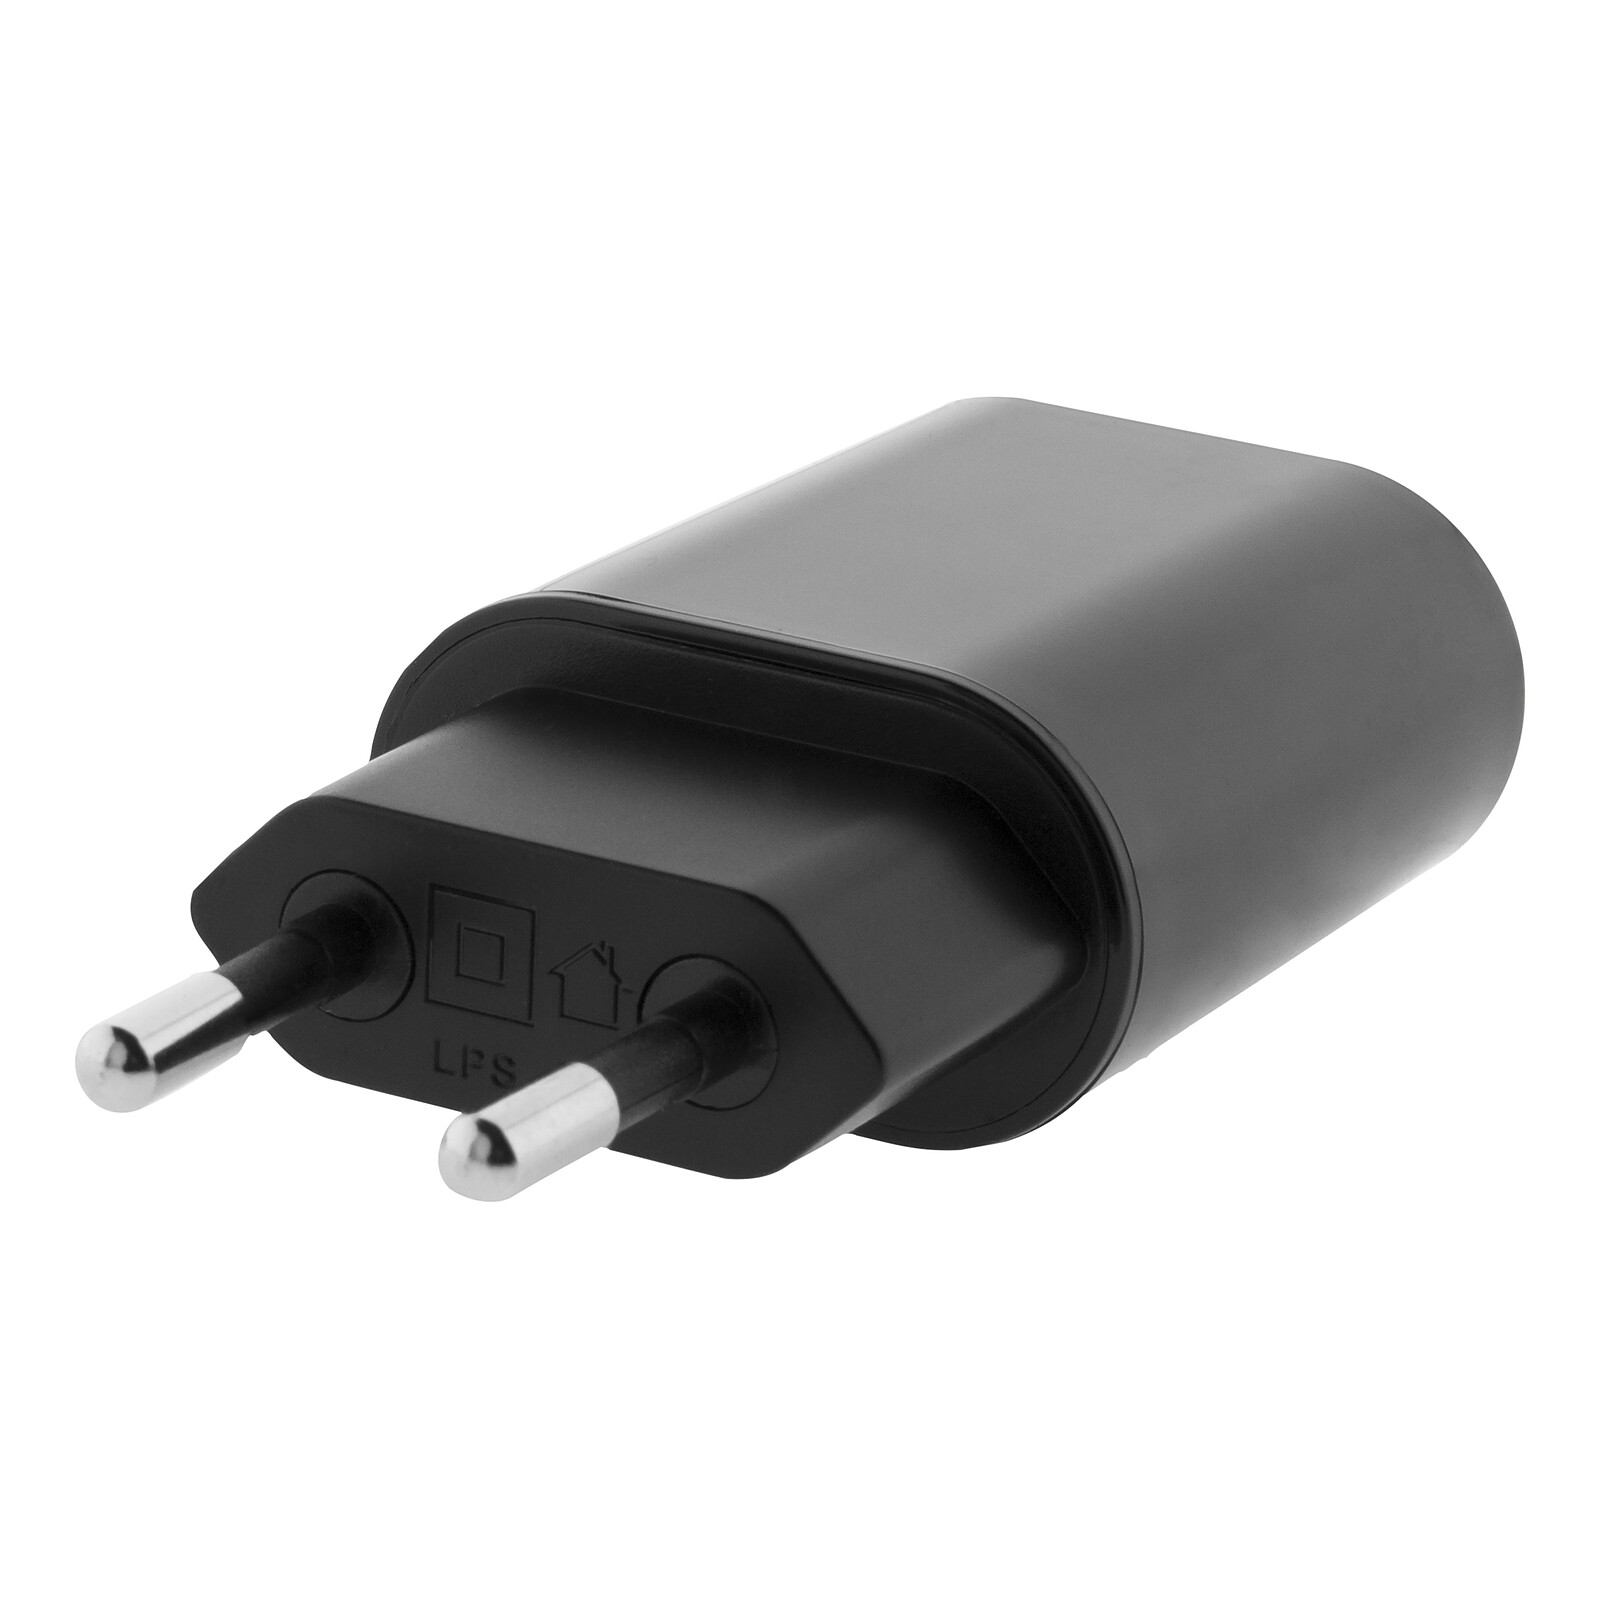 Chargeur de pile électrique Zenitech - Câble USB universel avec